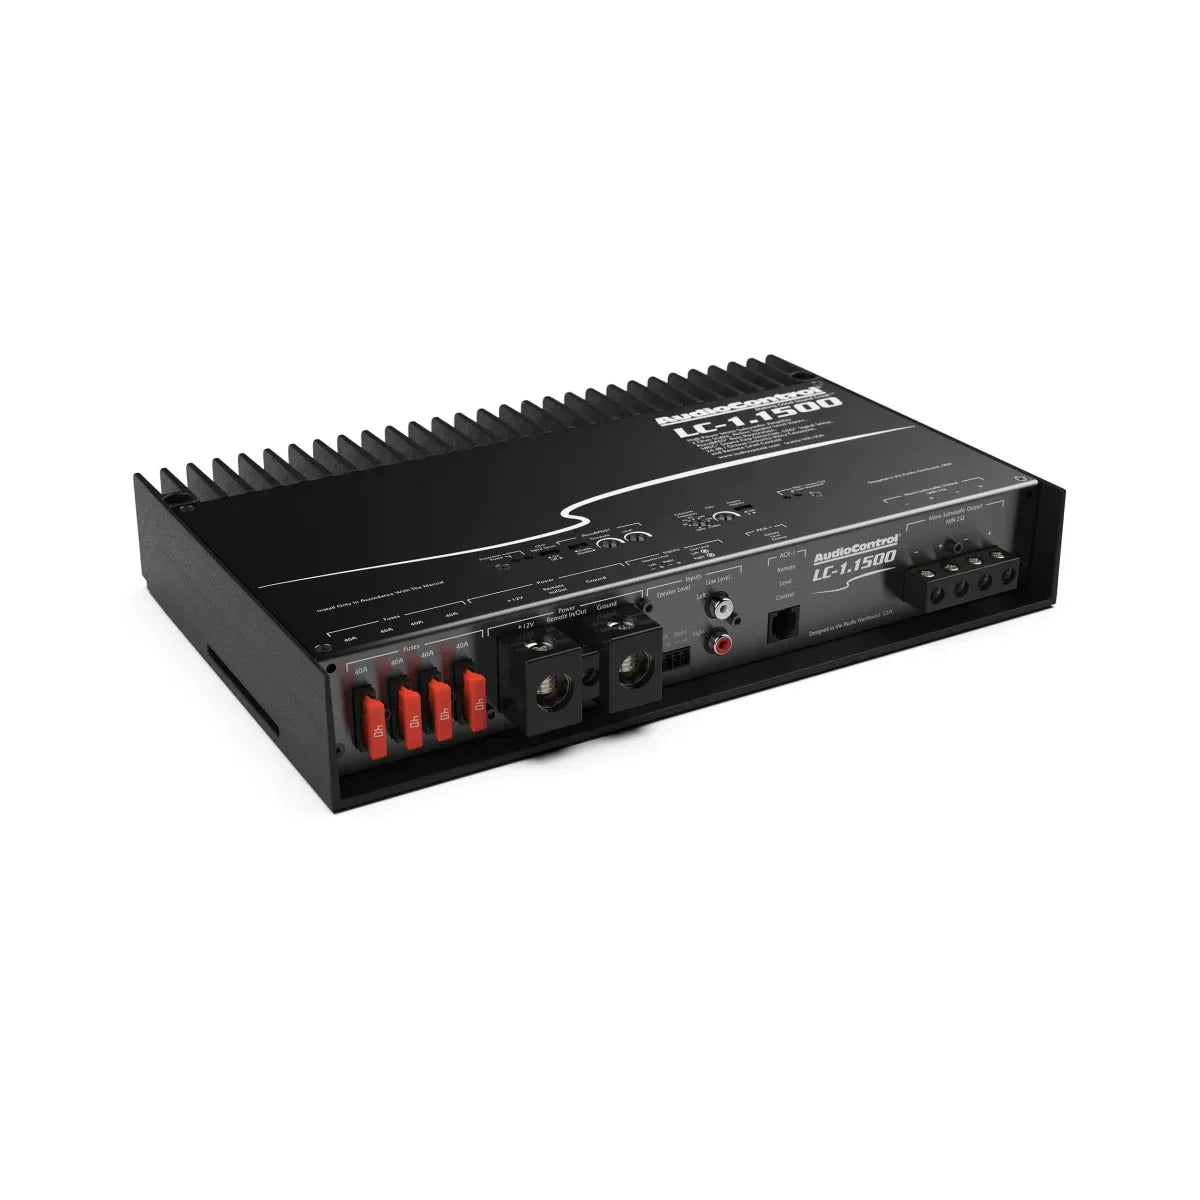 LC-1.15001-Kanal 1-Kanal Verstärker Verstärker AUDIOCONTROL Audiocontrol